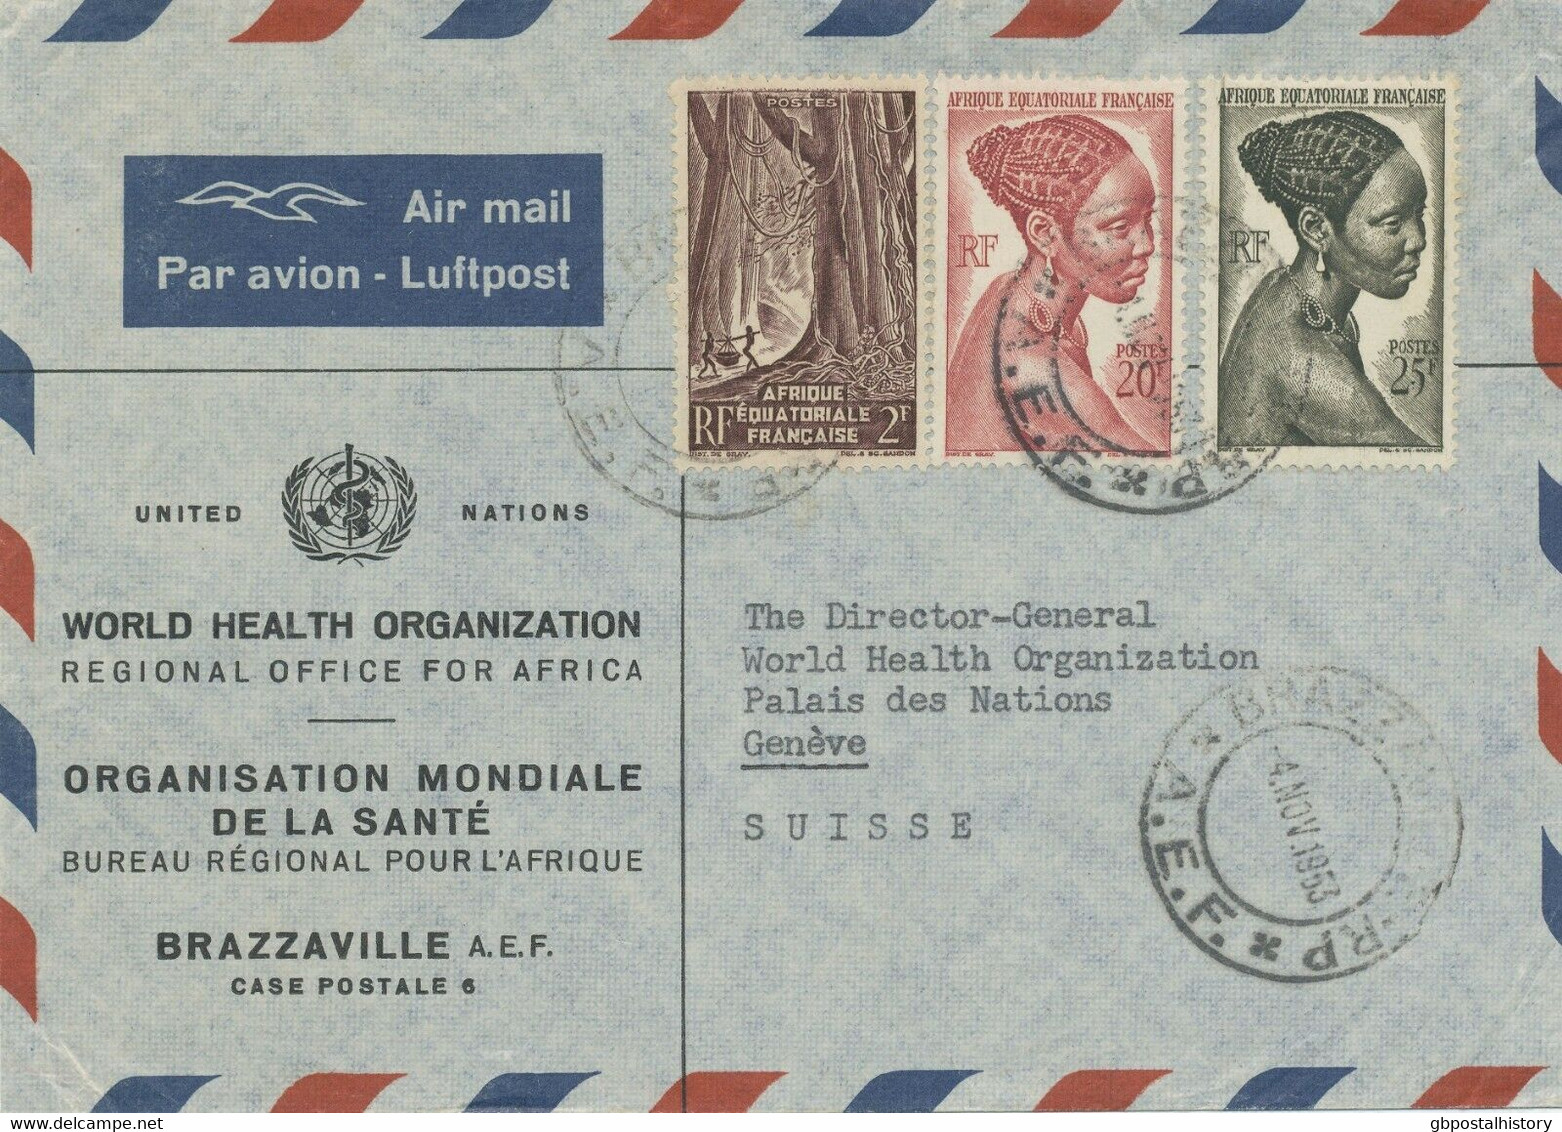 FRANZÖSISCH ÄQUATORIAL AFRIKA 1953 Buntfrankatur Kab.-Vordruck-Lupo Der WHO UNO - Briefe U. Dokumente